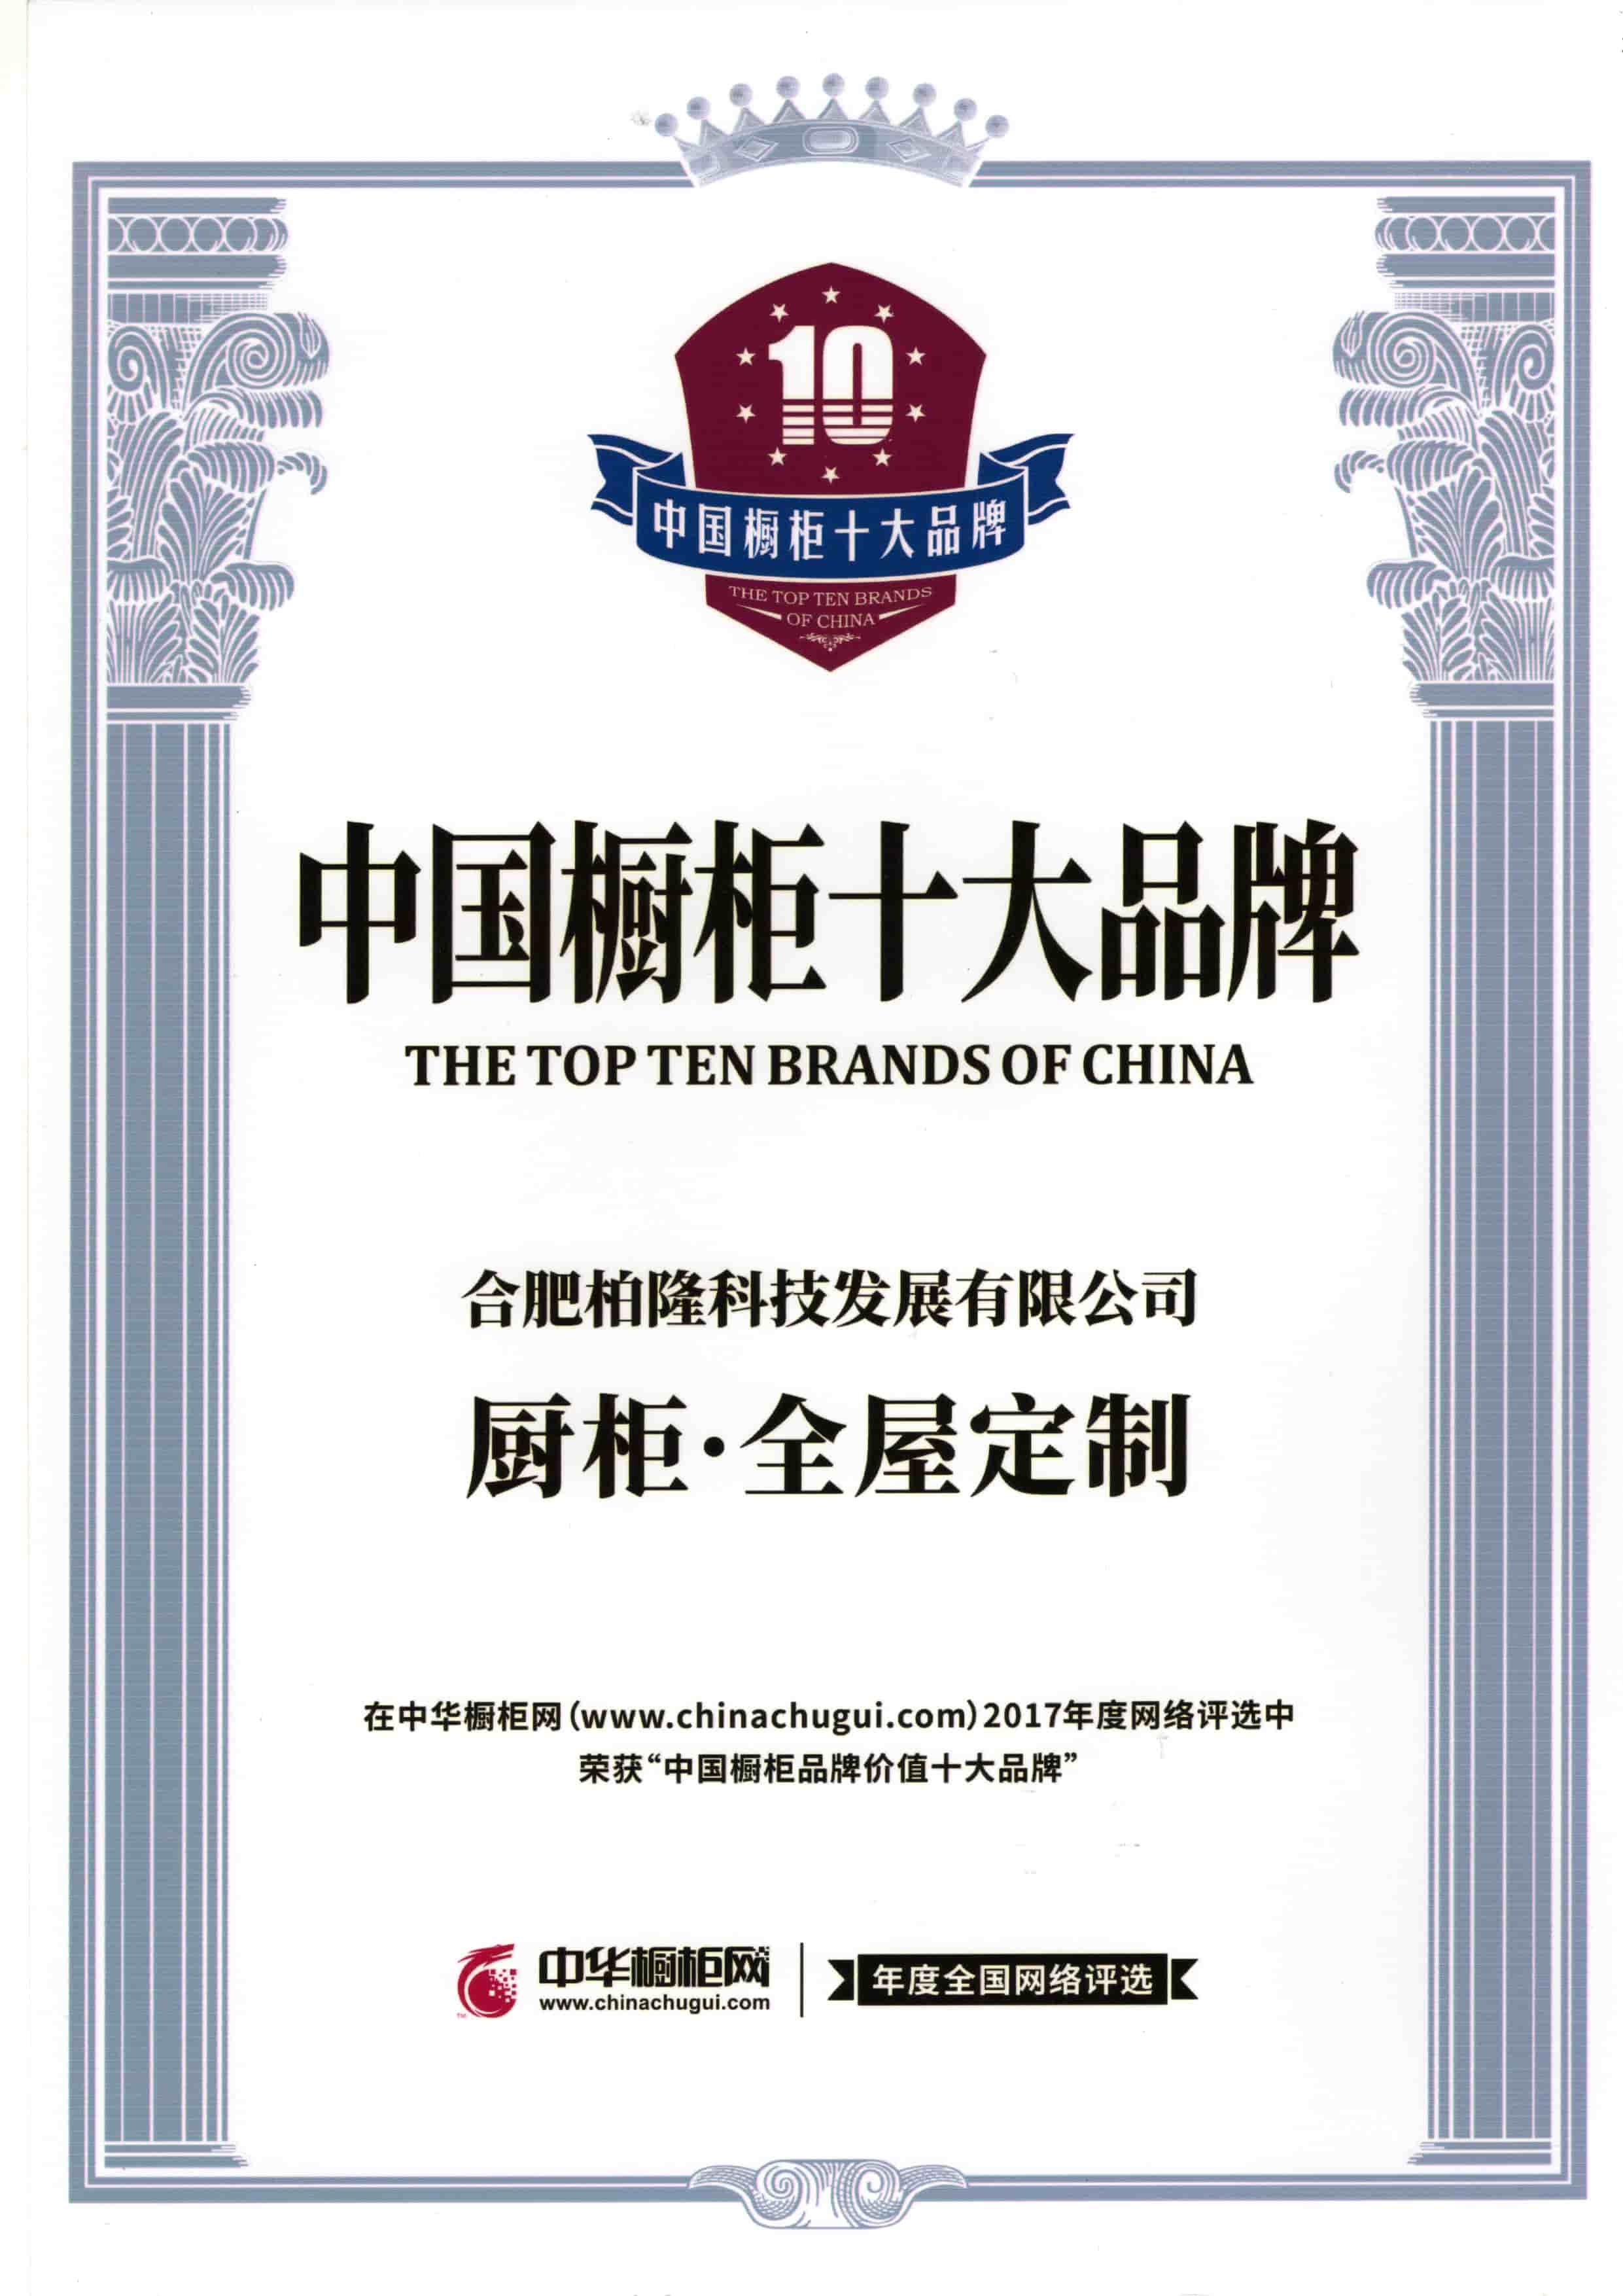 Uma das dez principais marcas da China
